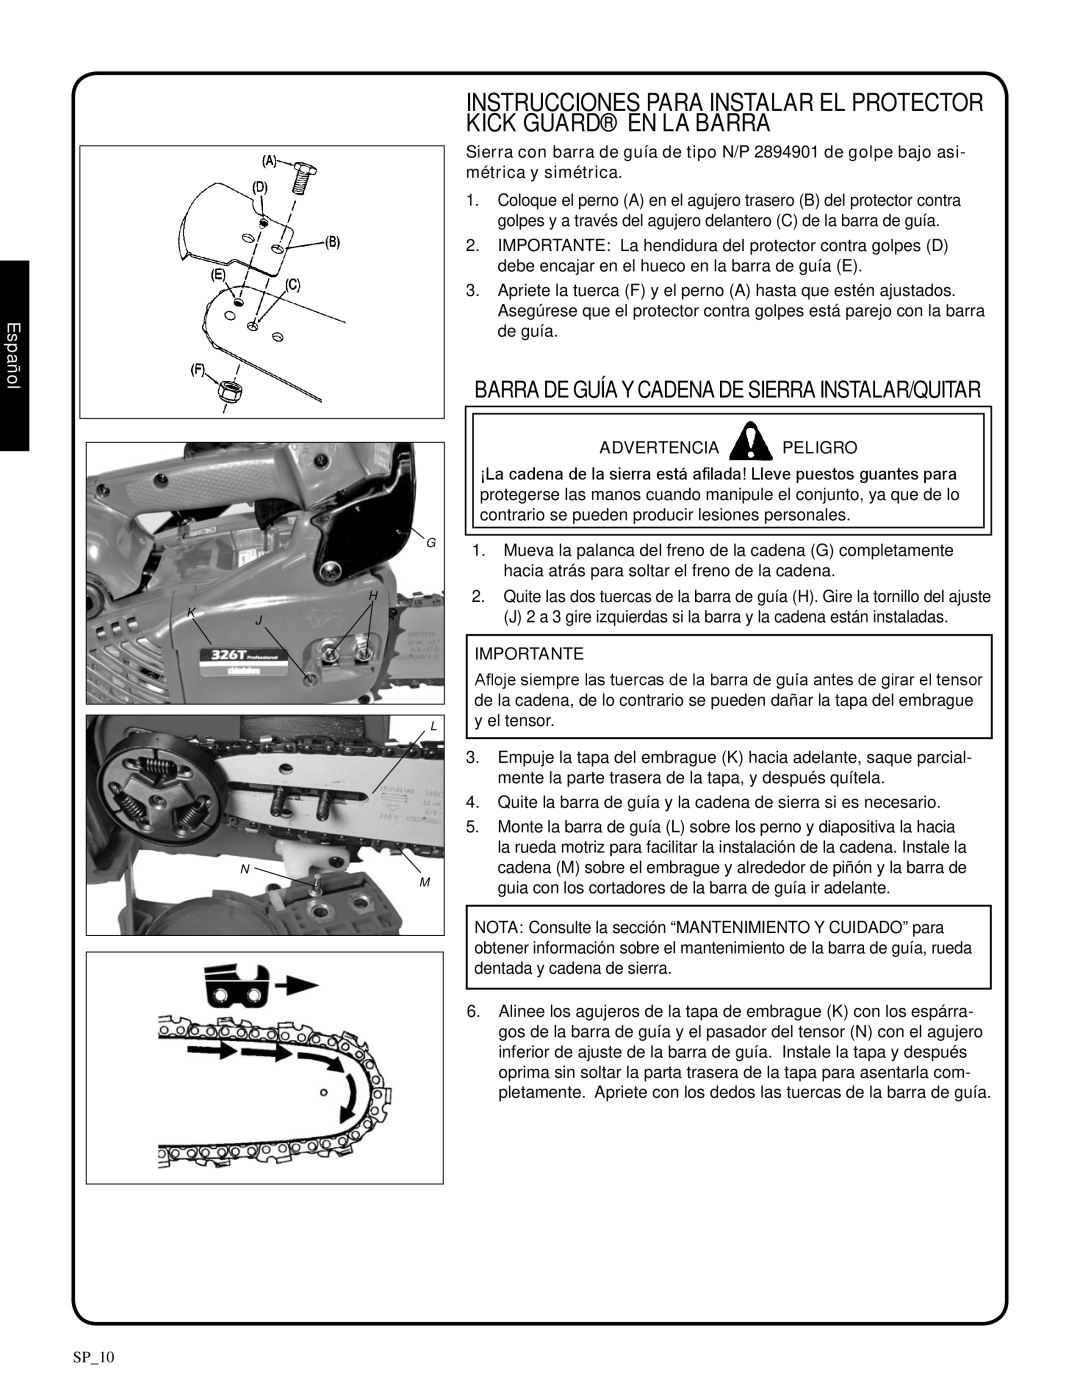 Shindaiwa 82085, 326T manual barra de guíay cadena de sierra instalar/quitar, Advertencia Peligro, Importante, Español 